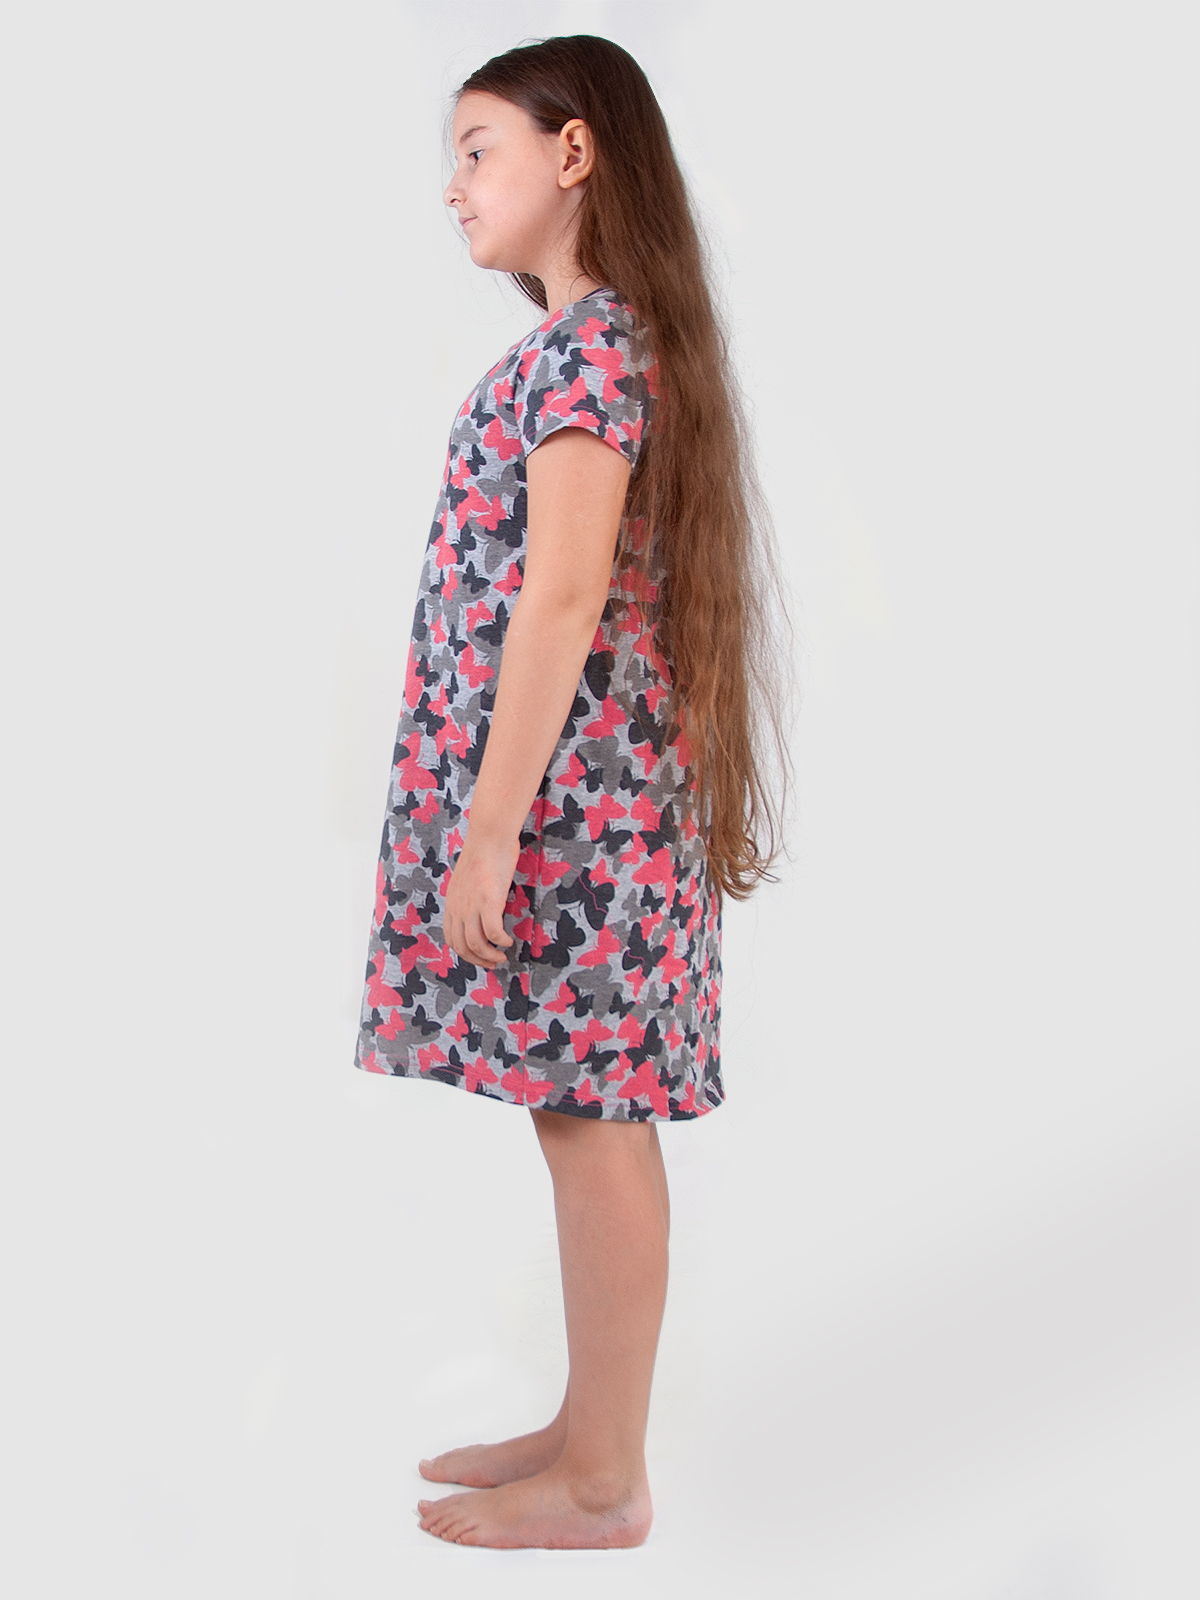 Ночная сорочка для девочки фото в интернет-магазин TREND